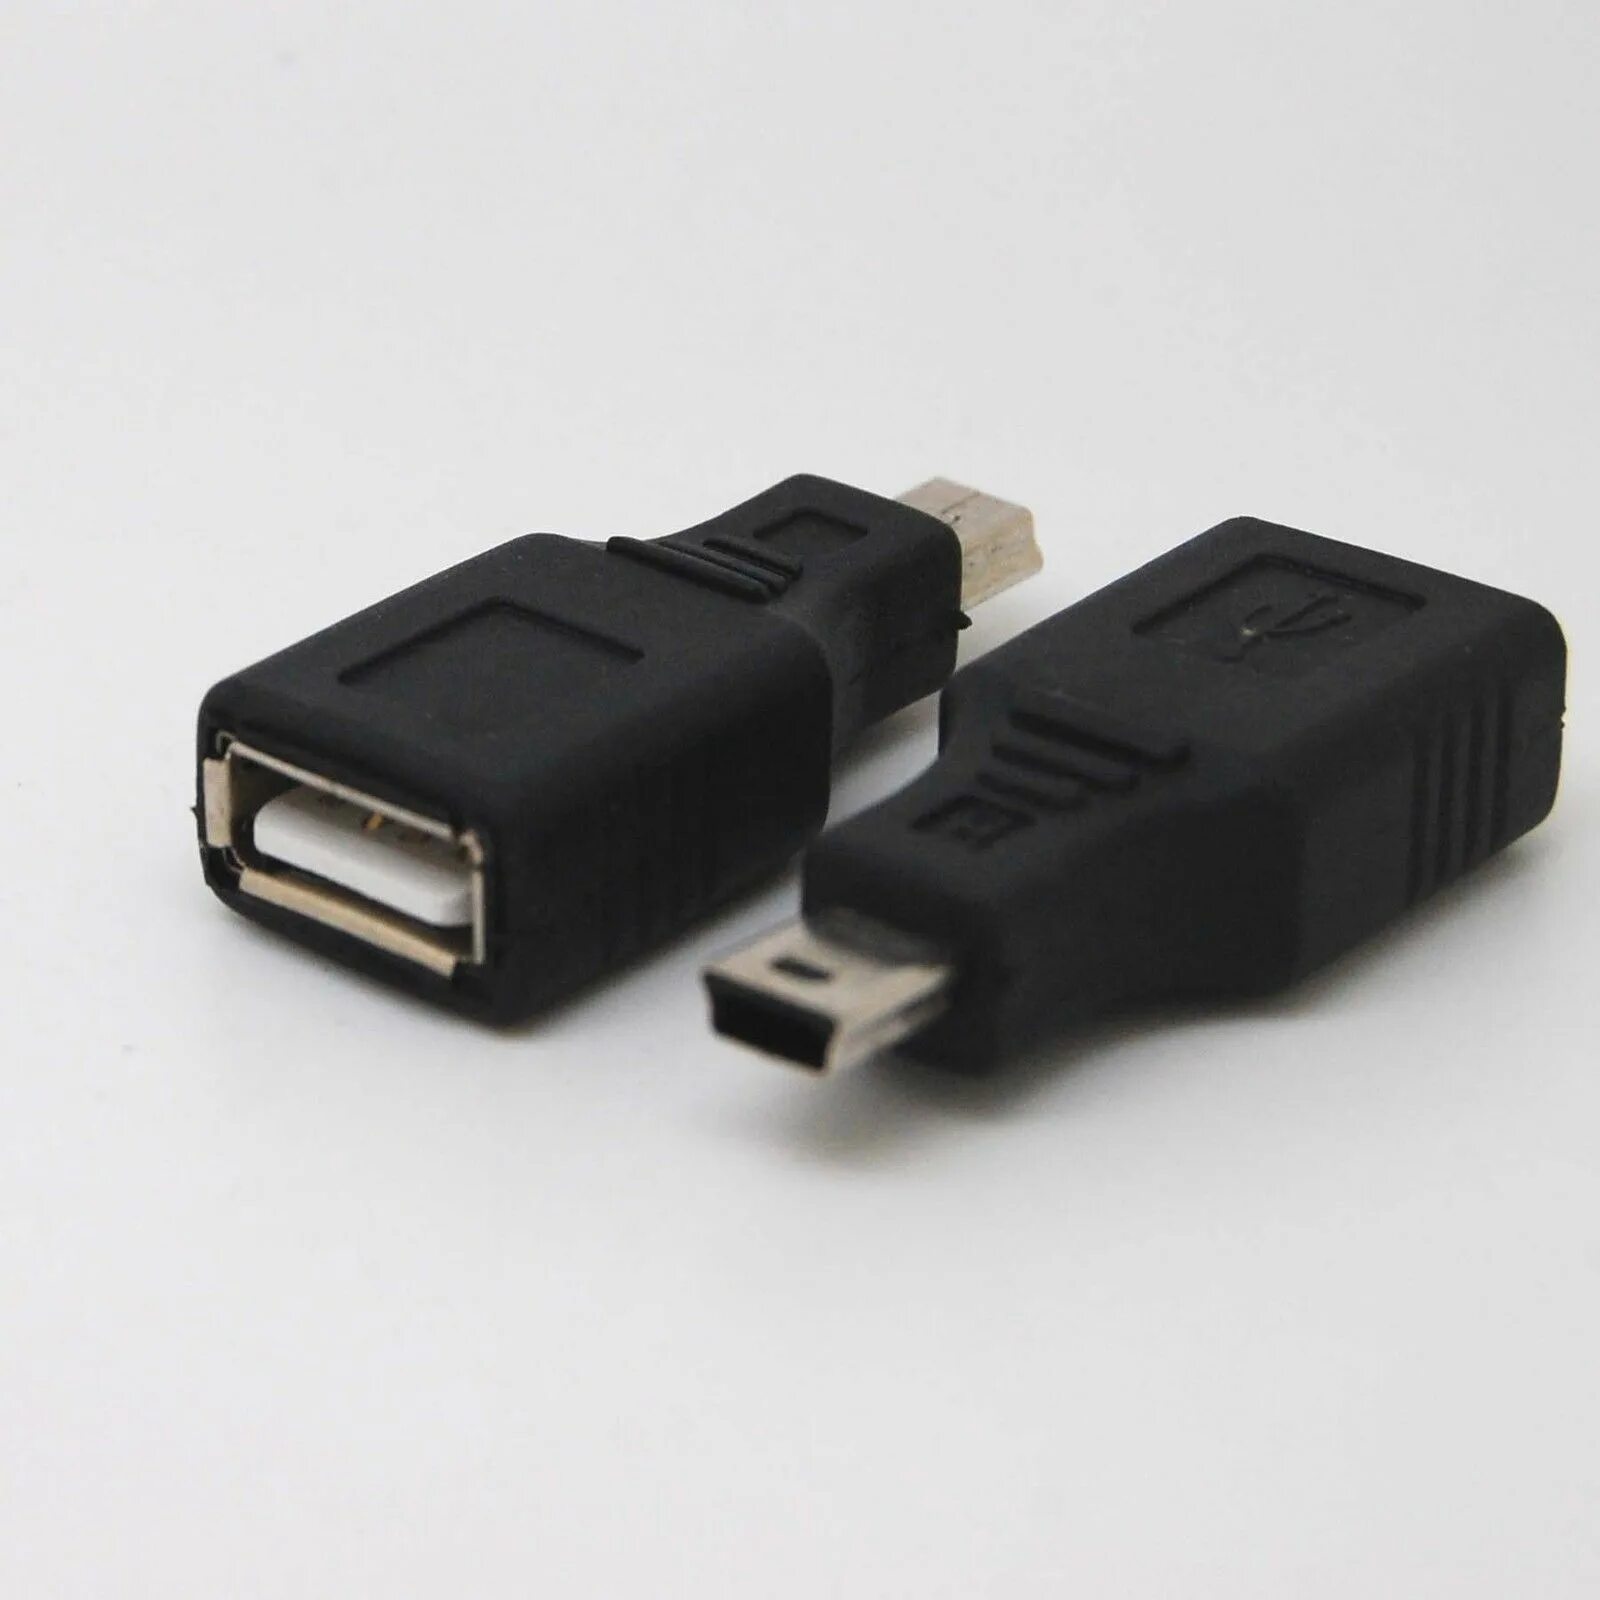 Usb type a купить. Кабель USB 2.0 Тип a b 5pin Mini. USB 2.0 Mini b 5 Pin. Переходник с USB 2.0 на Mini USB. USB A 2.0 - Mini USB B переходник.